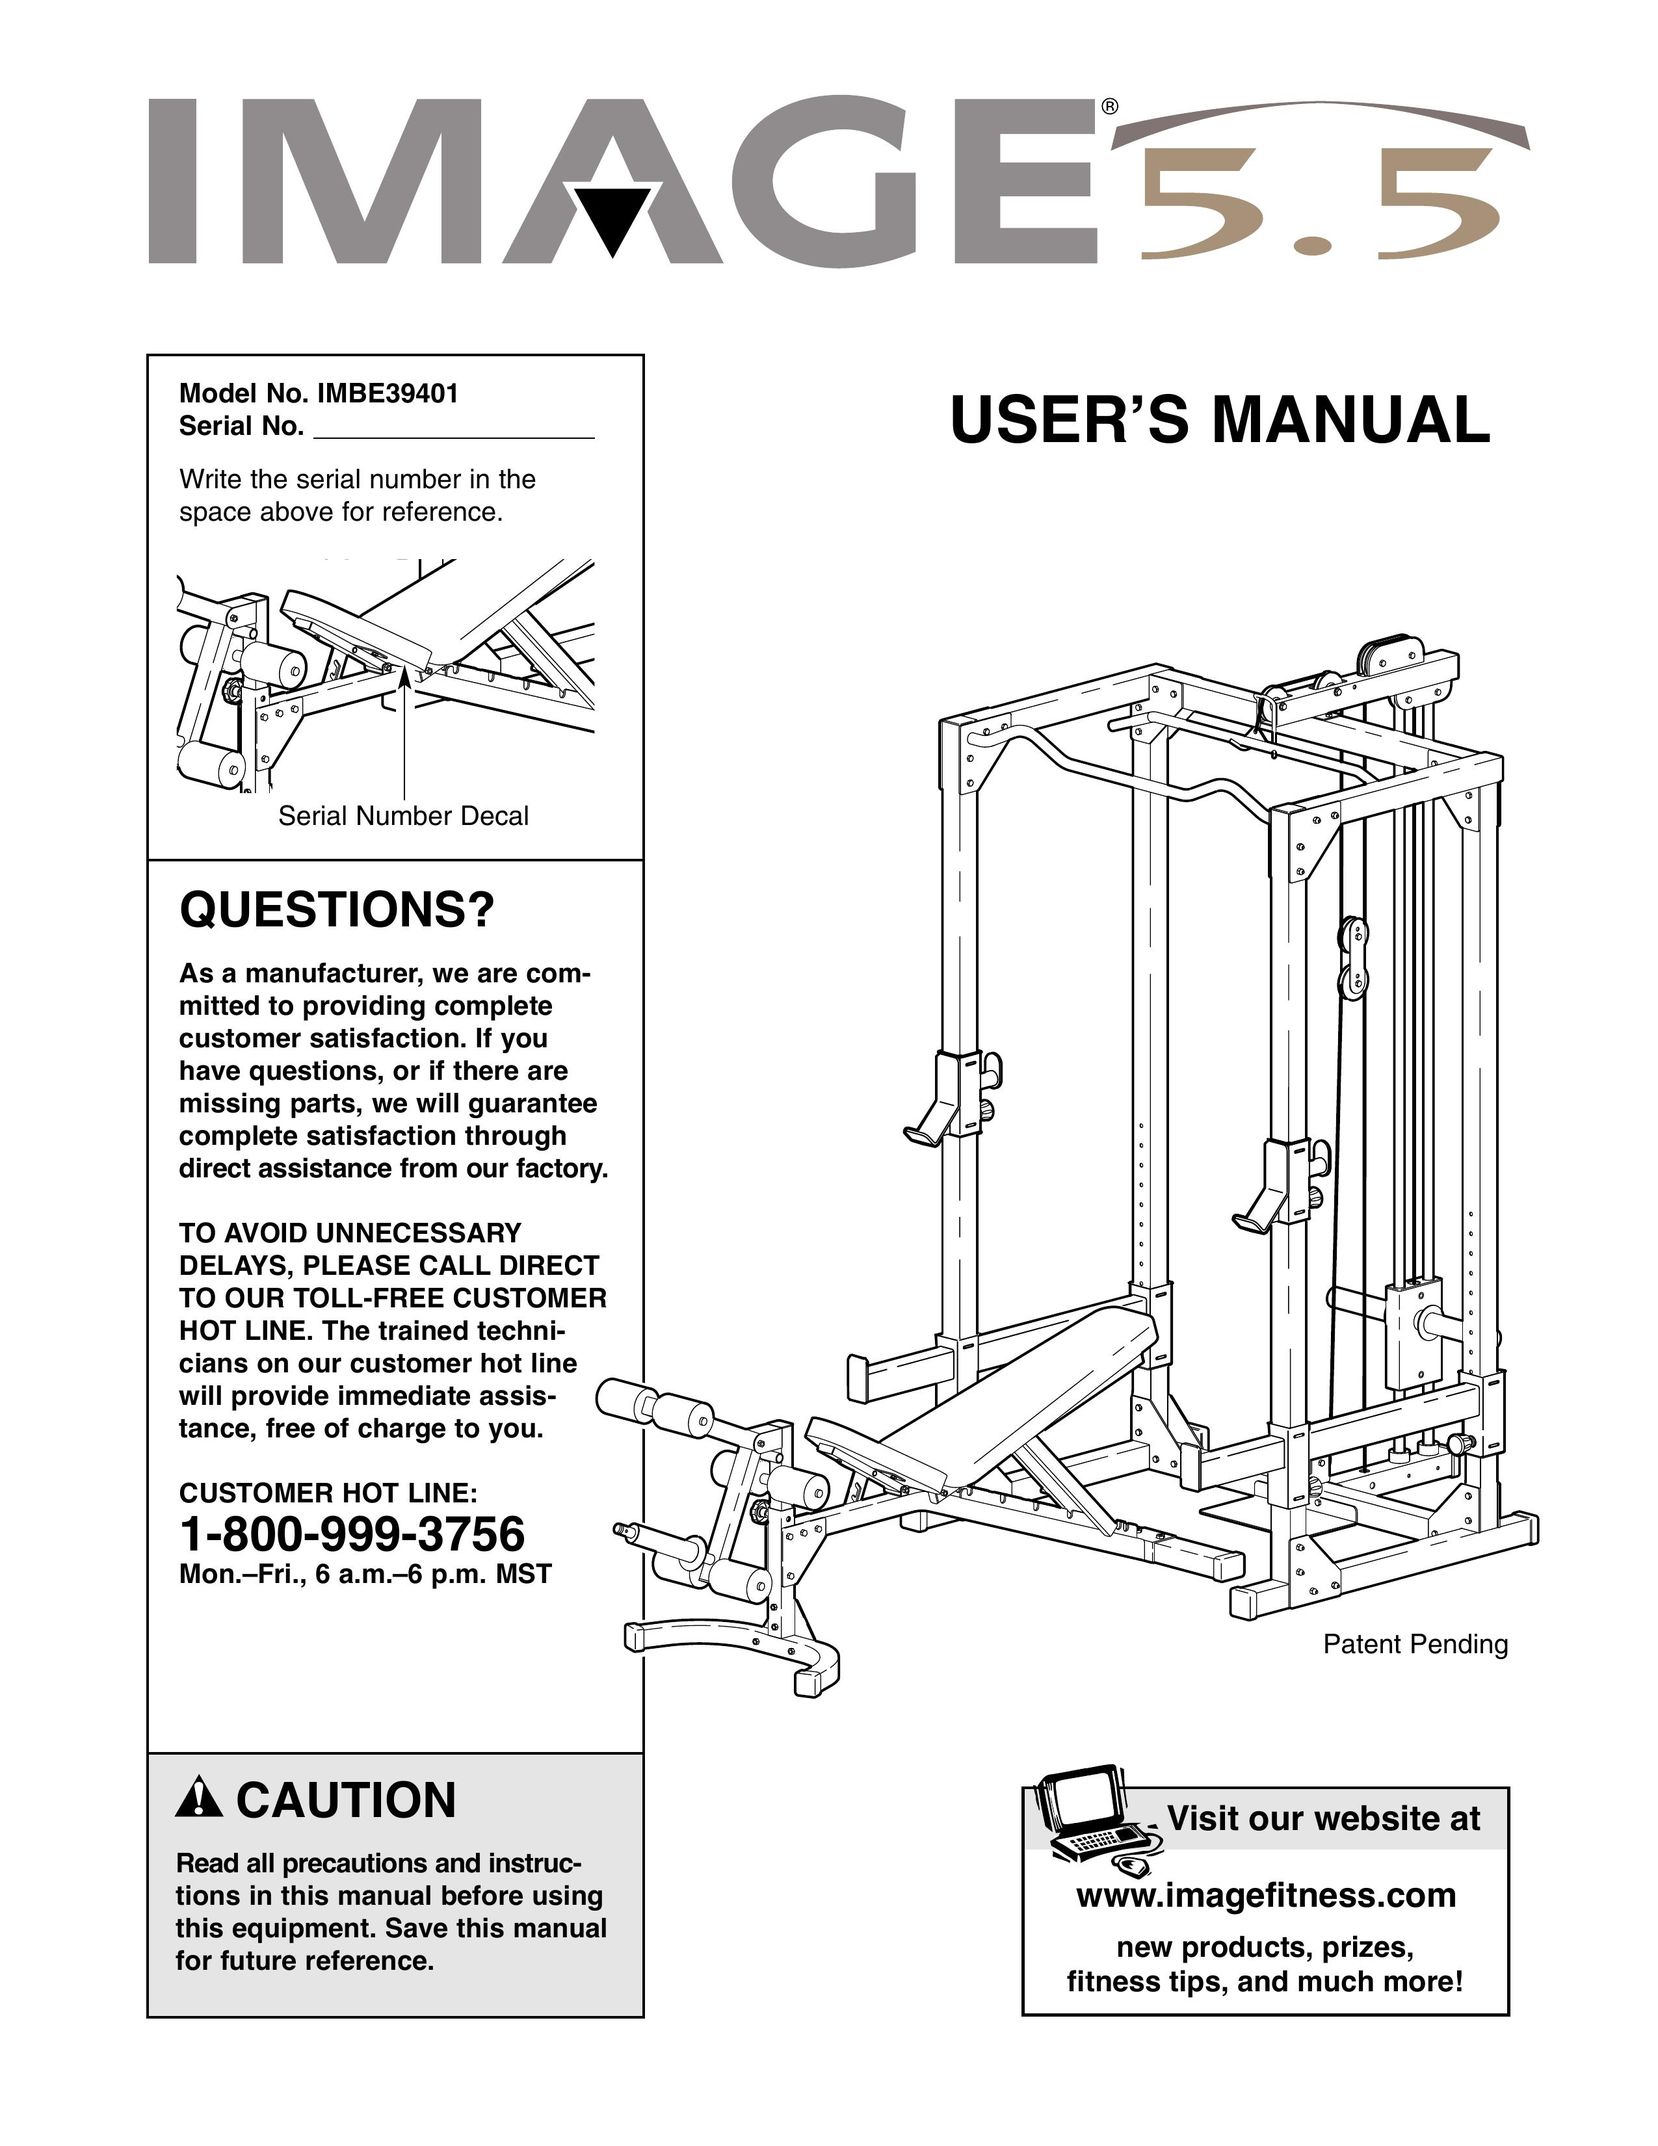 Image IMBE39401 Home Gym User Manual